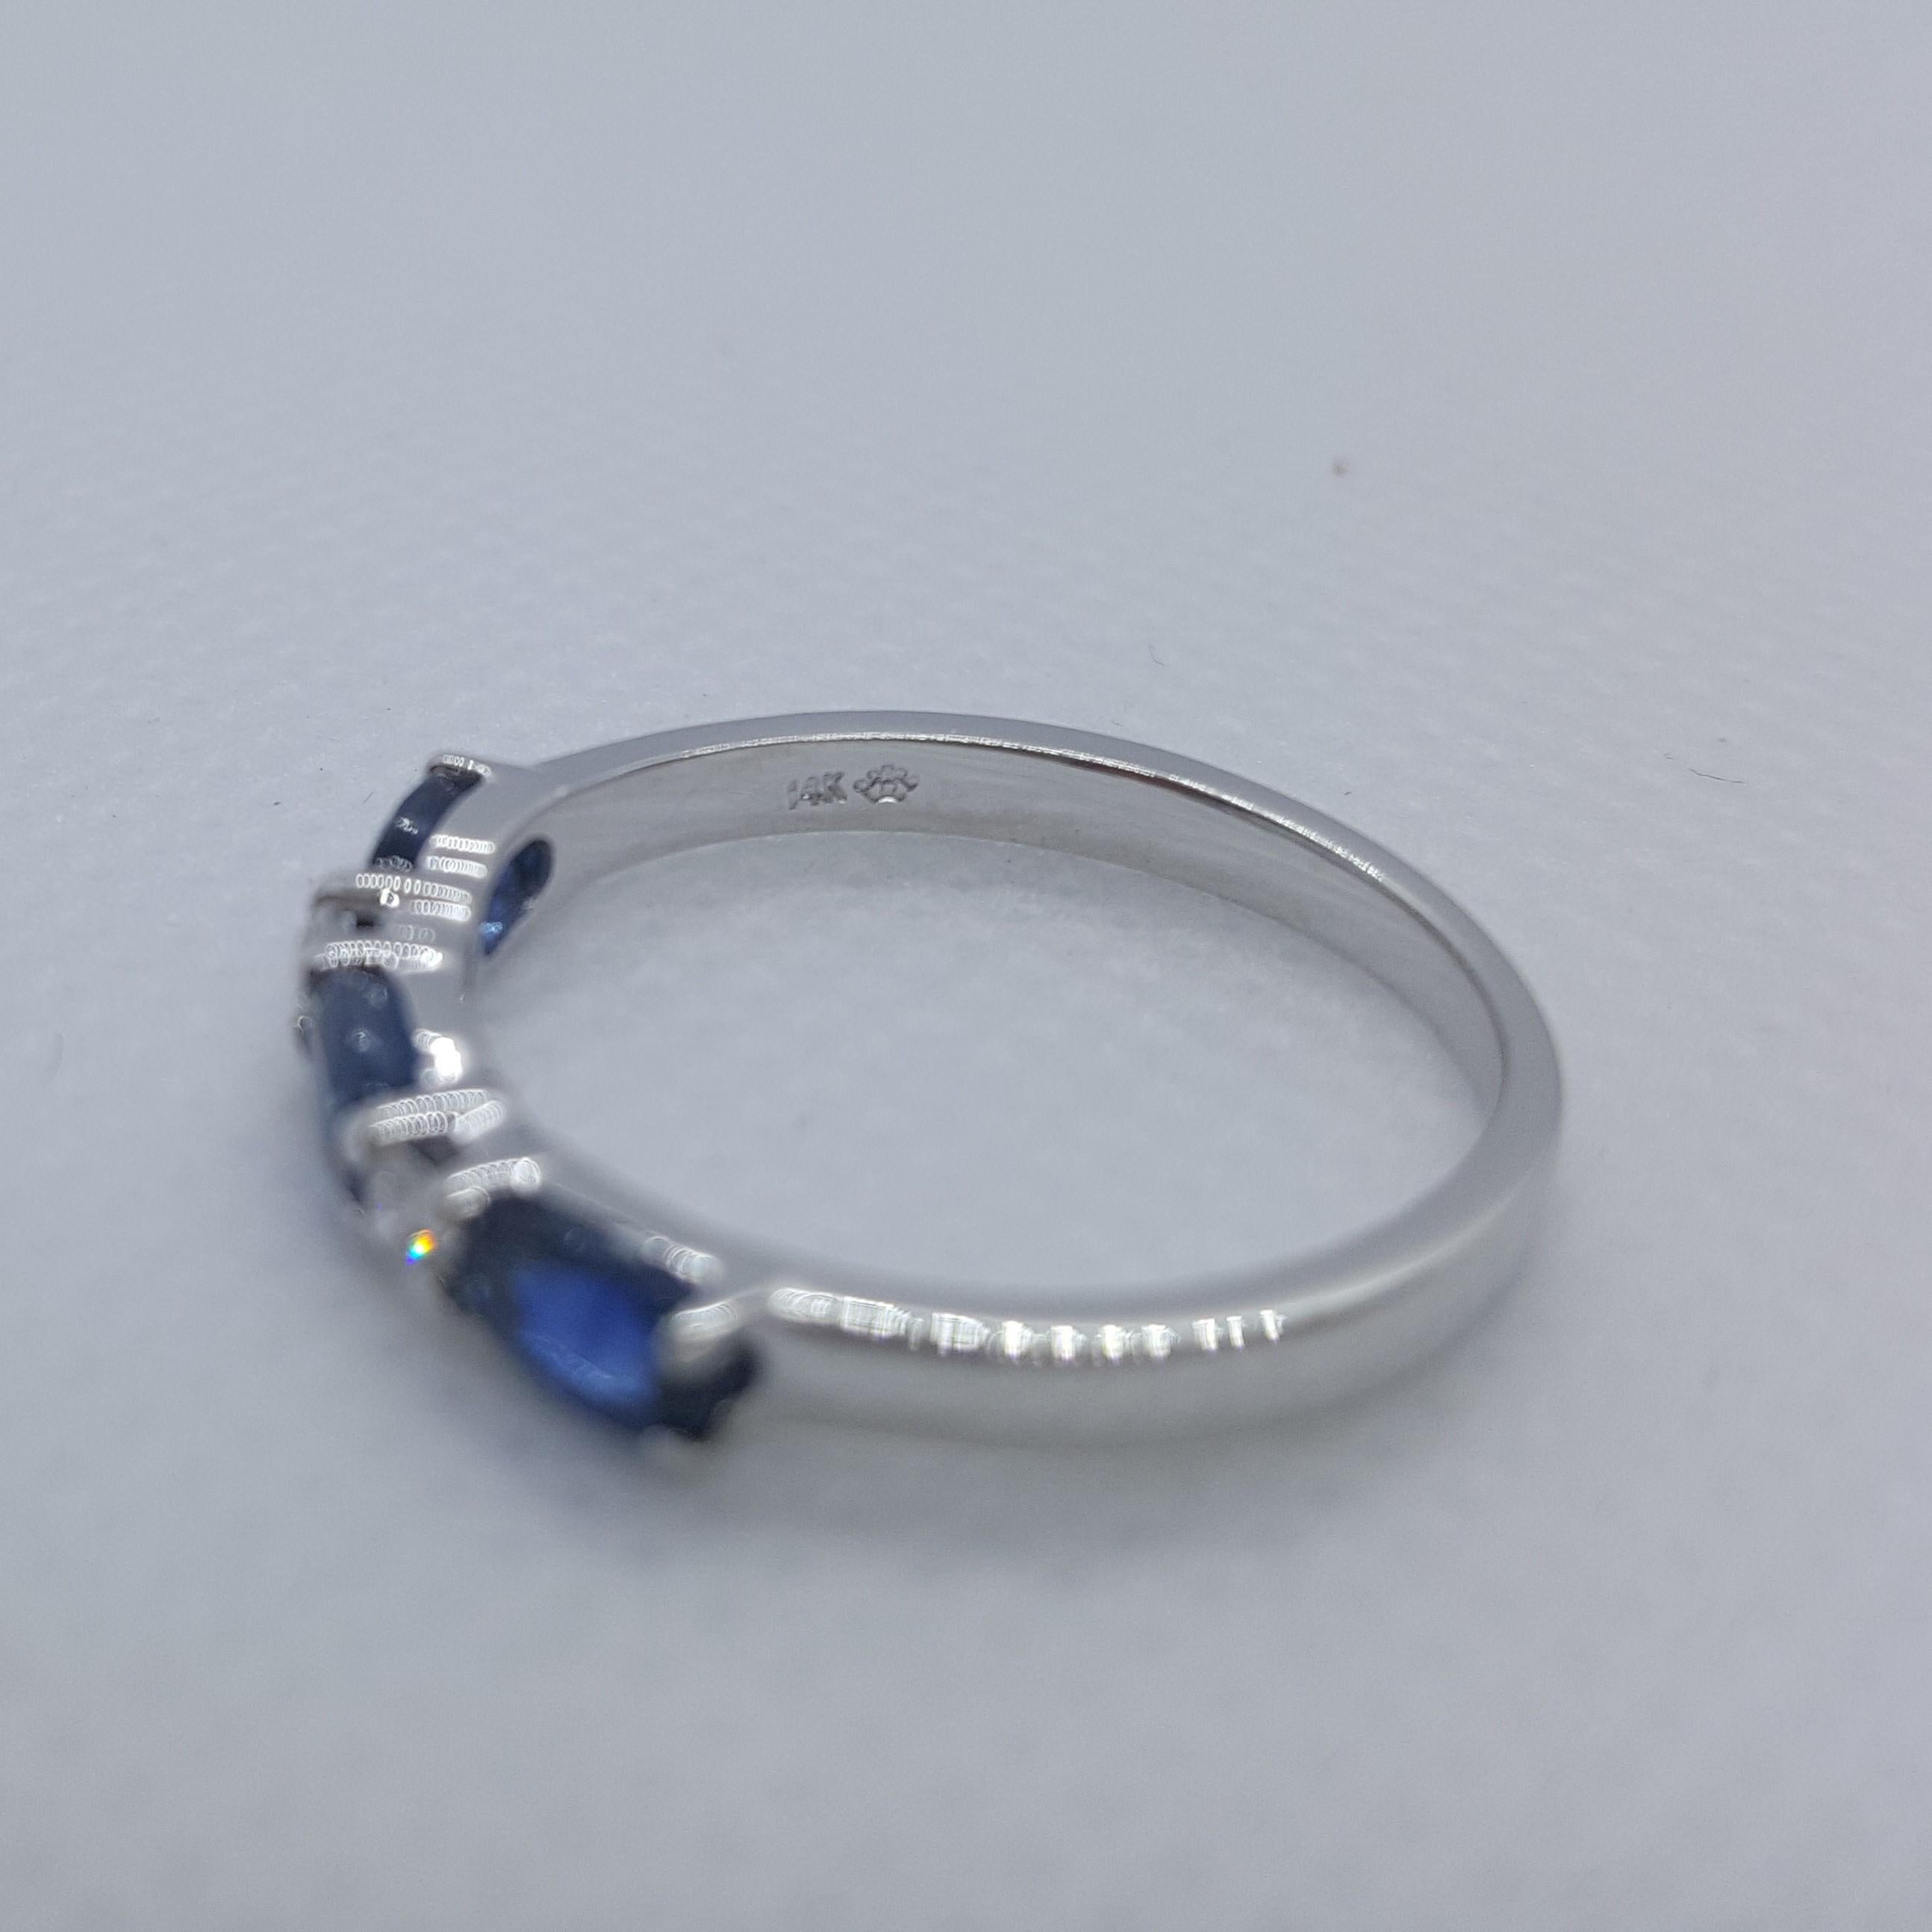 Schöner 14kt Weißgoldring mit 3 feinen blauen ovalen Saphiren von ungefähr .80cttw und 2 runden Diamanten von .05 cttw. Der Ring ist 2,3 mm an der Spitze verjüngt sich auf 2 mm an der Basis und Größe 7; gestempelt 14kt und wiegt 7,3 Gramm. Insgesamt